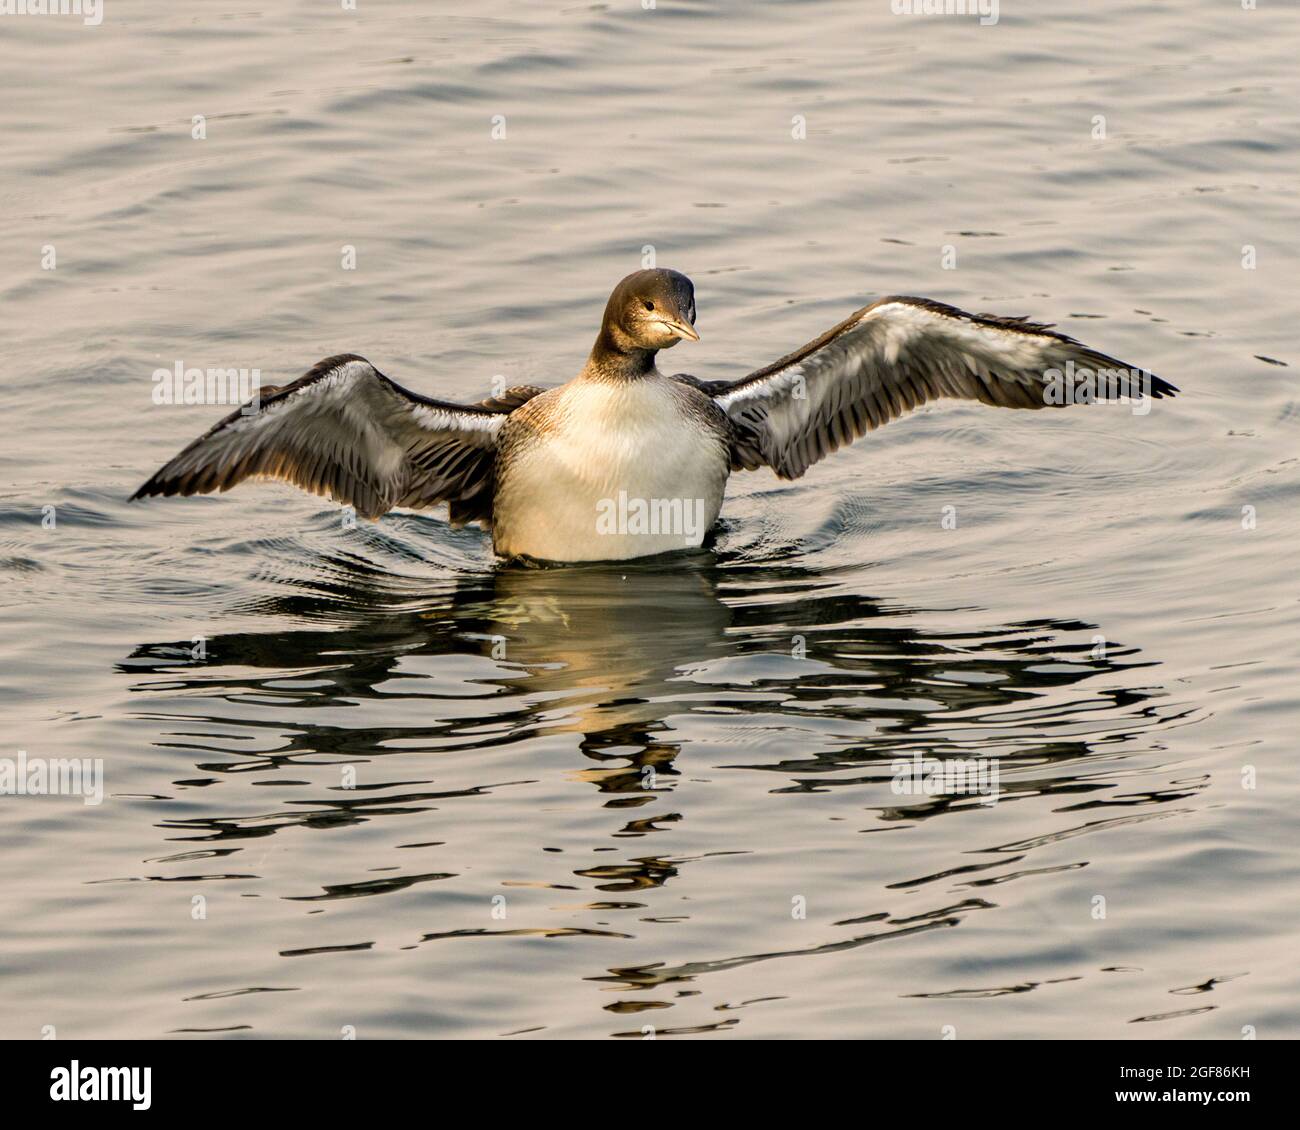 Comune Loon immaturo giovane uccello nuotare nel suo ambiente e habitat circostante, mostrando il suo crescente palco spalmato ali e piuma. Loon. Foto Stock